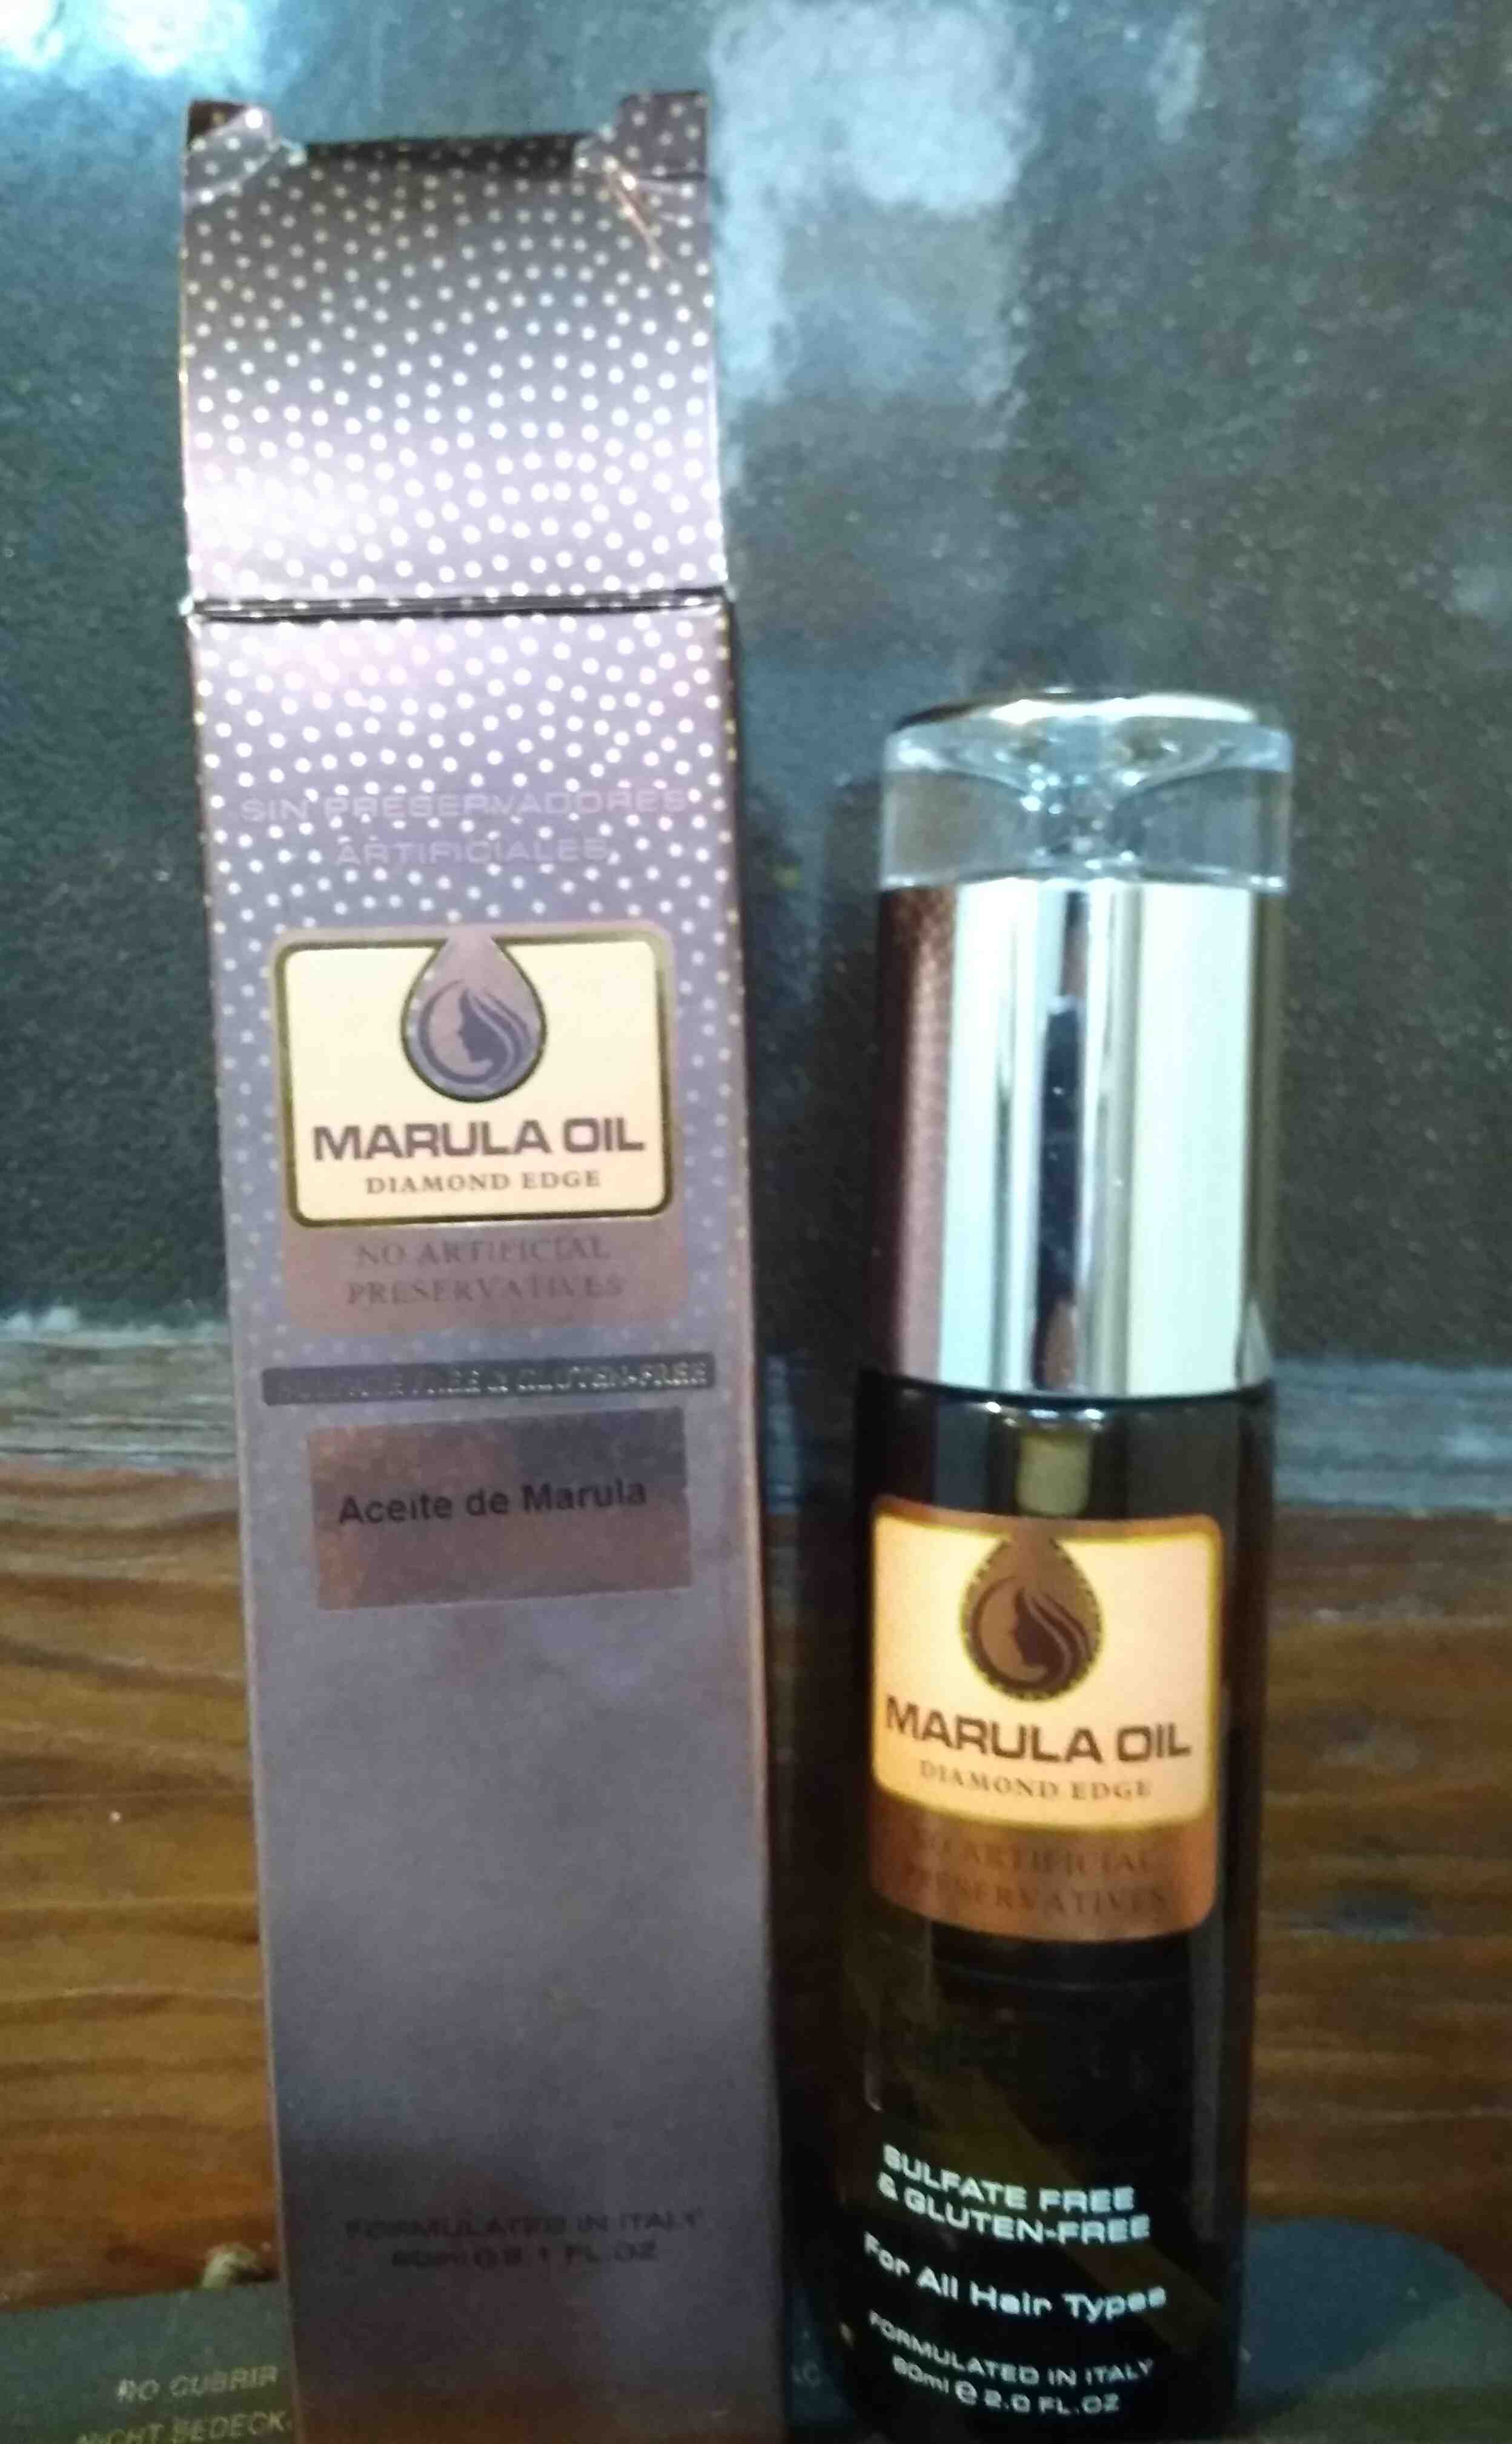 Marula oil diamond edge - 製品 - en